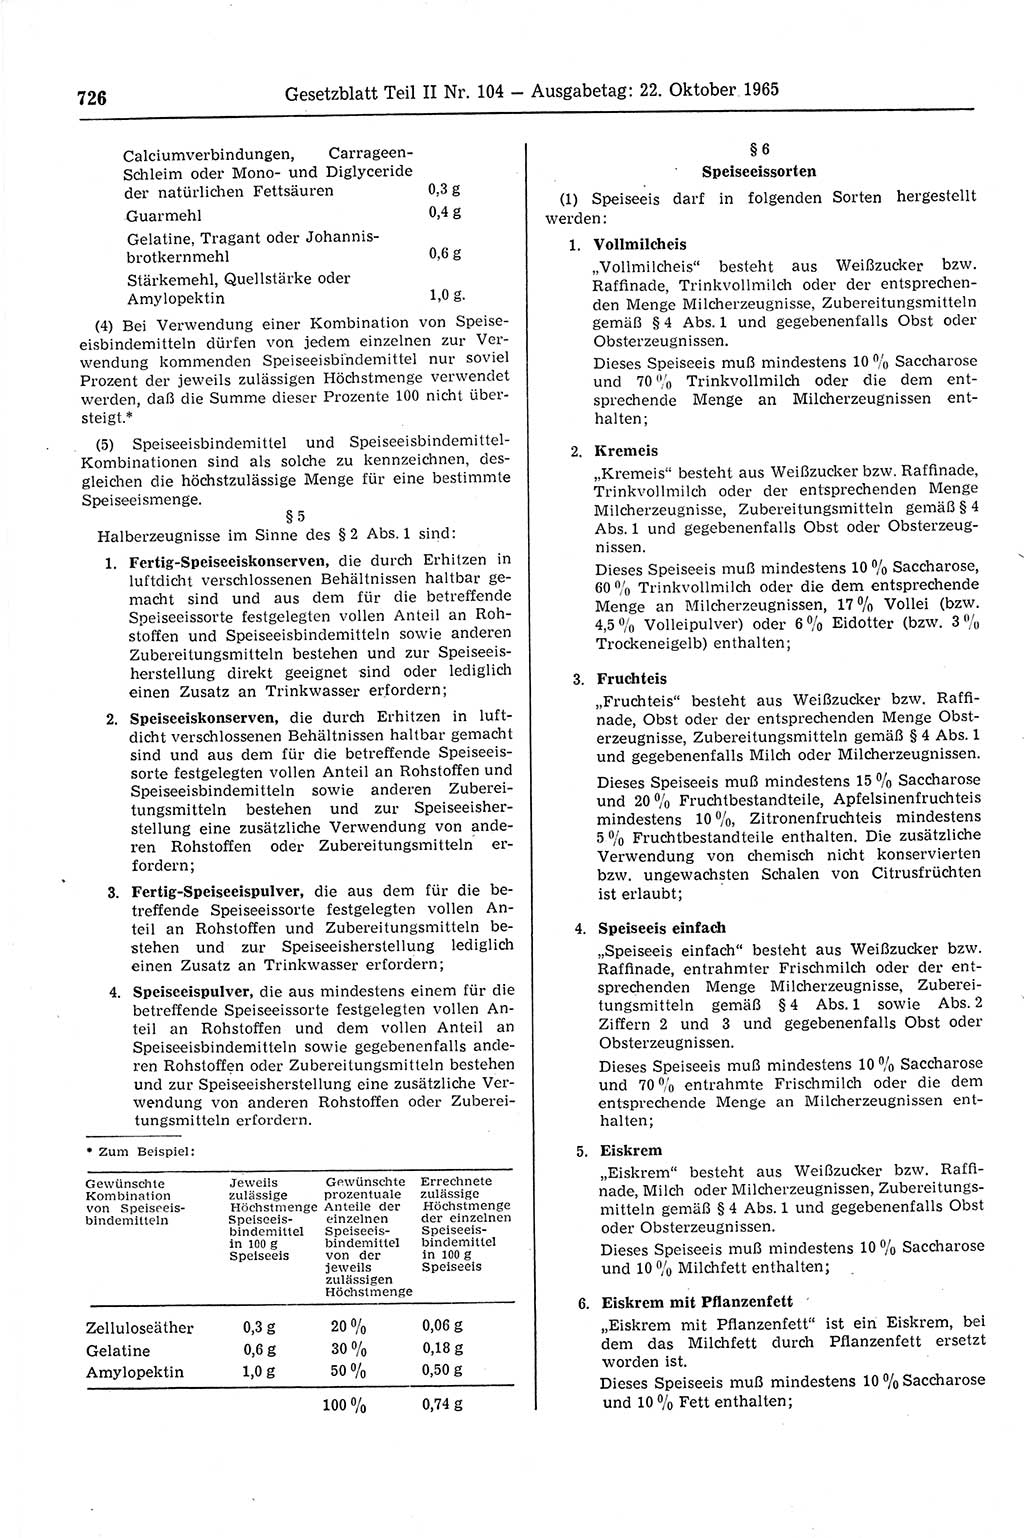 Gesetzblatt (GBl.) der Deutschen Demokratischen Republik (DDR) Teil ⅠⅠ 1965, Seite 726 (GBl. DDR ⅠⅠ 1965, S. 726)